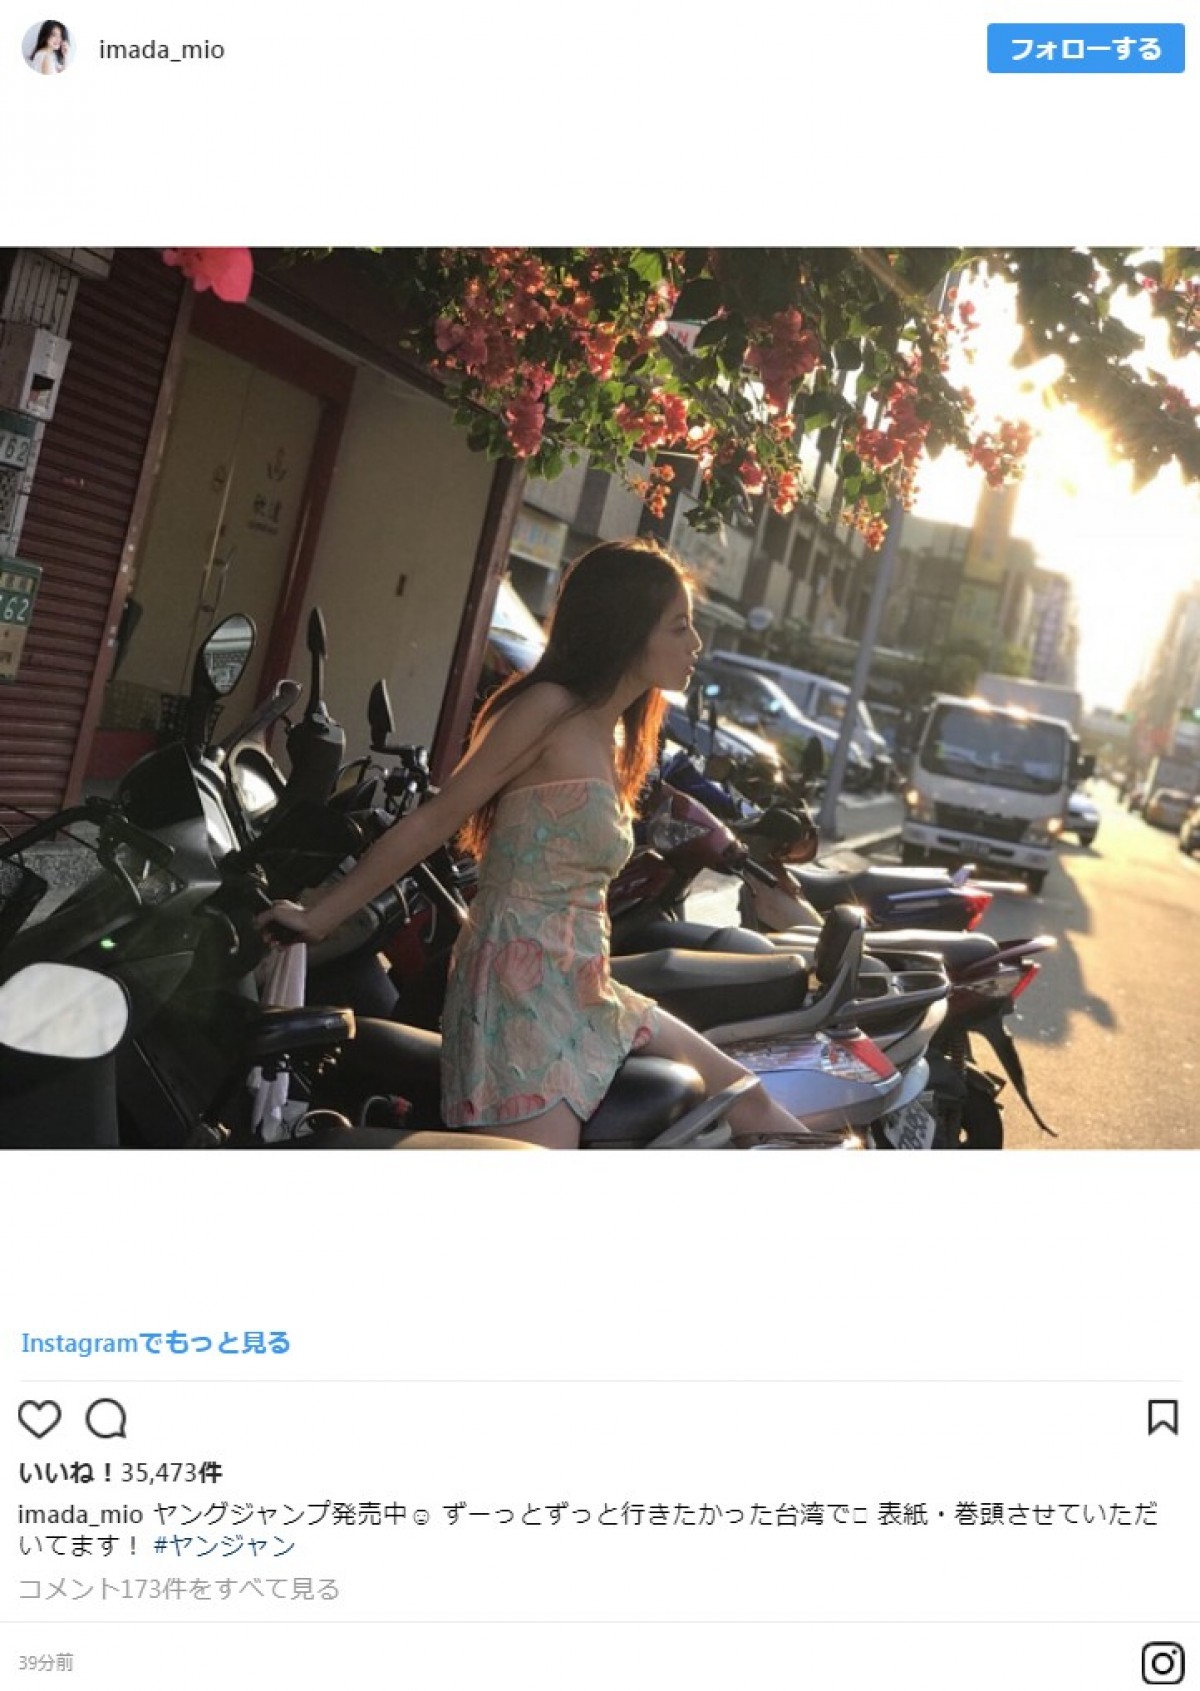 『花のち晴れ』美少女・今田美桜、バイクまたがるショットに反響